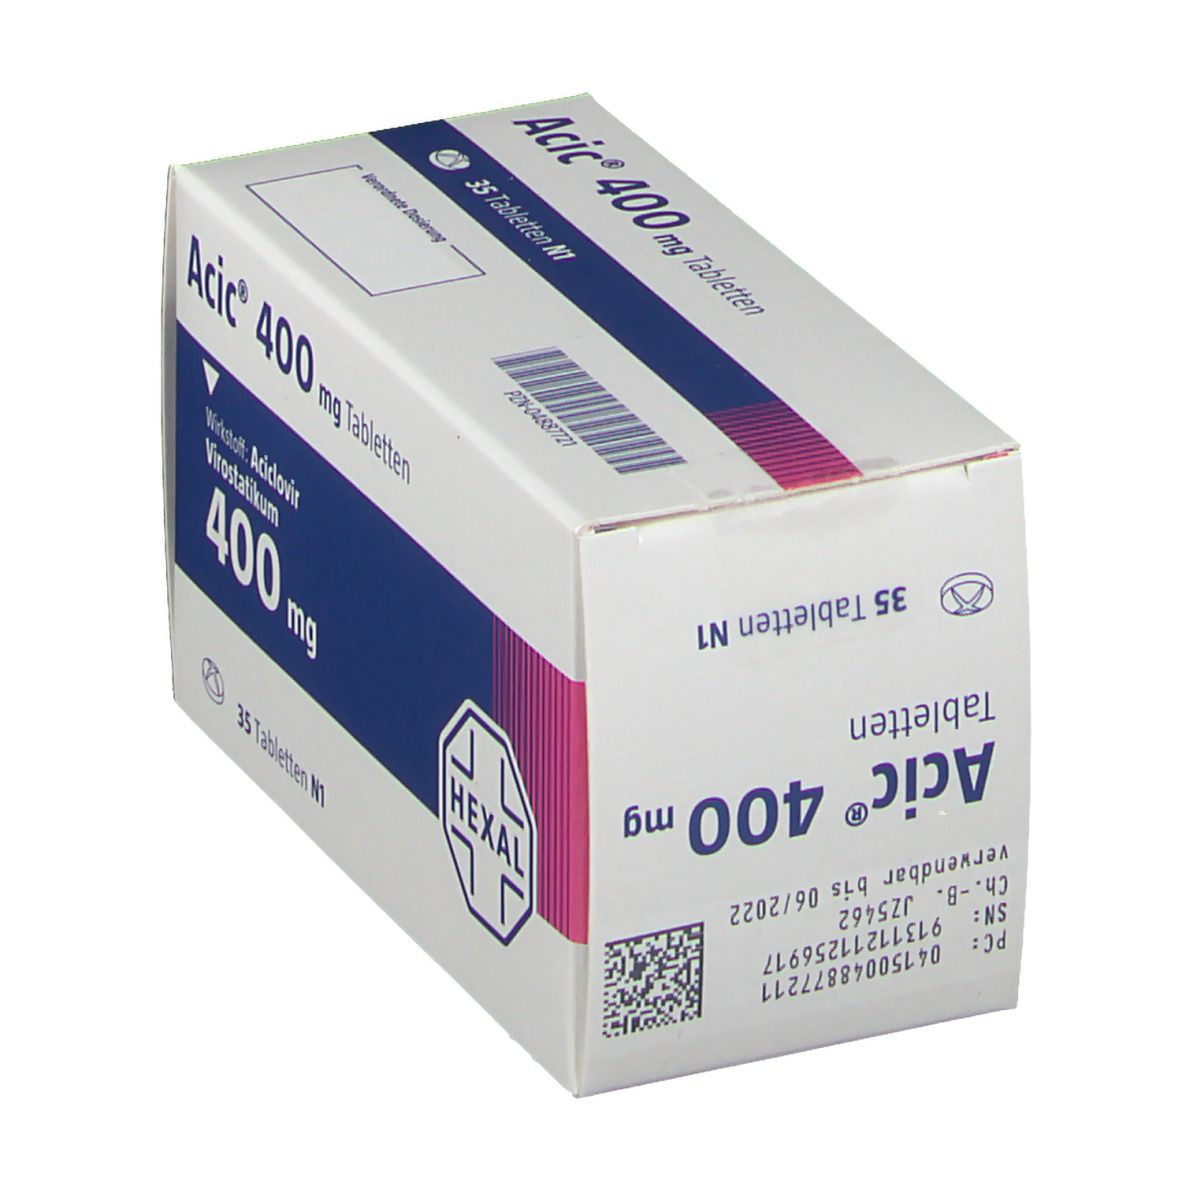 Acic® 400 mg